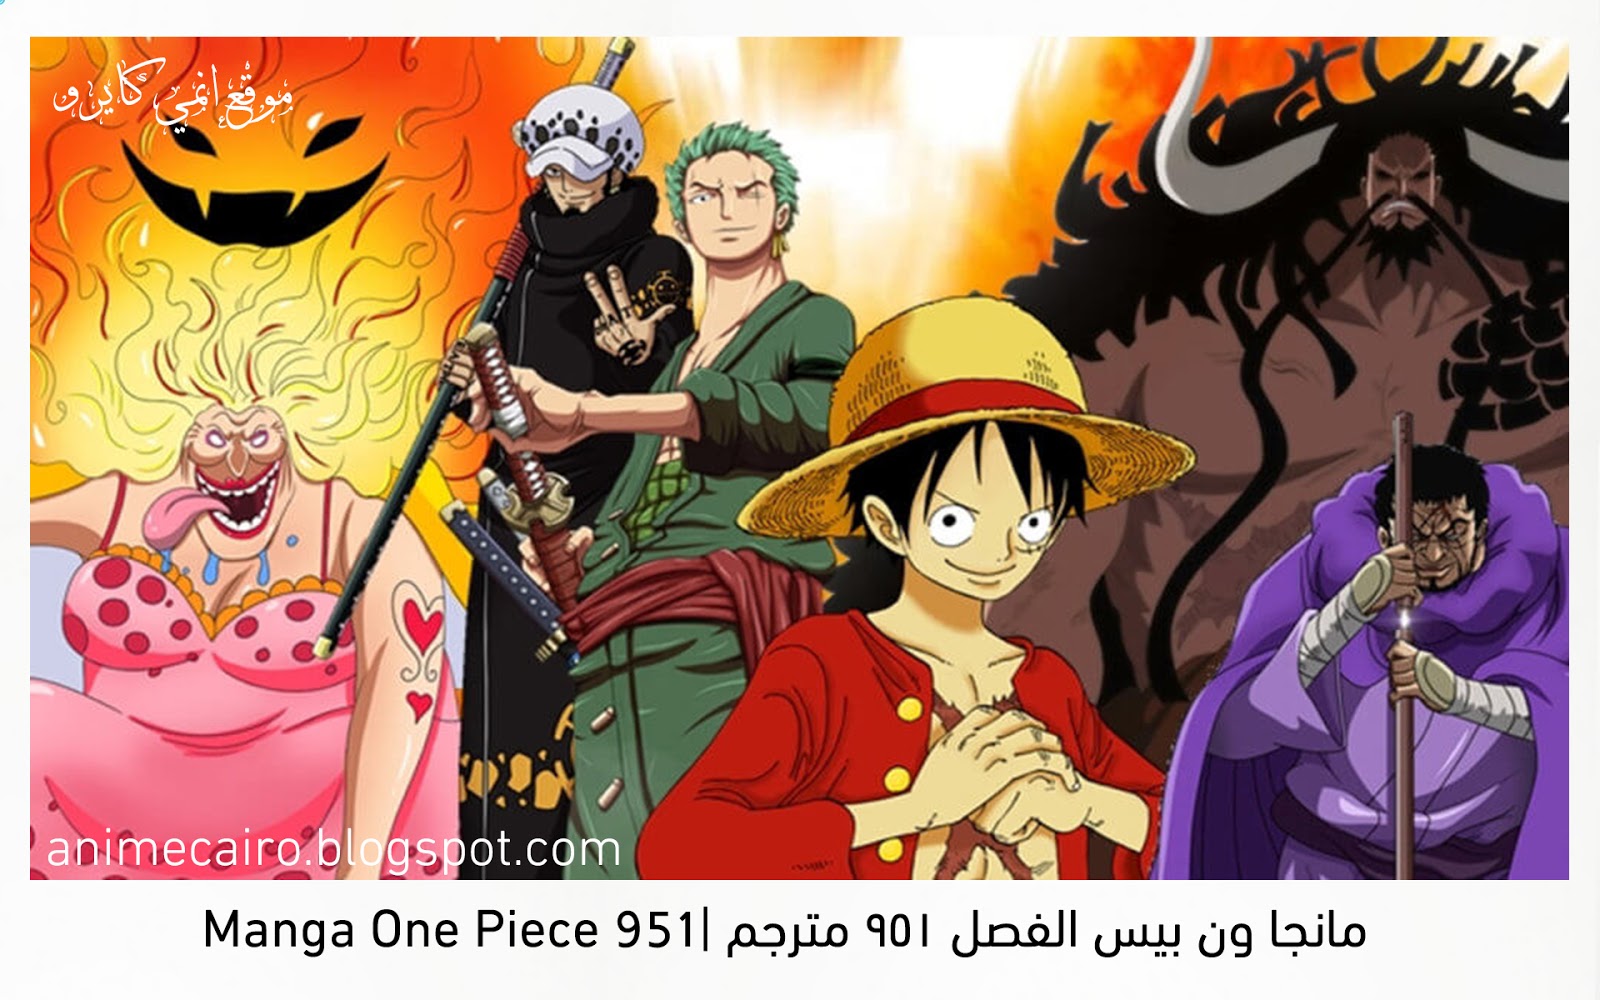 مانجا ون بيس الفصل 951 مترجم Manga One Piece 951